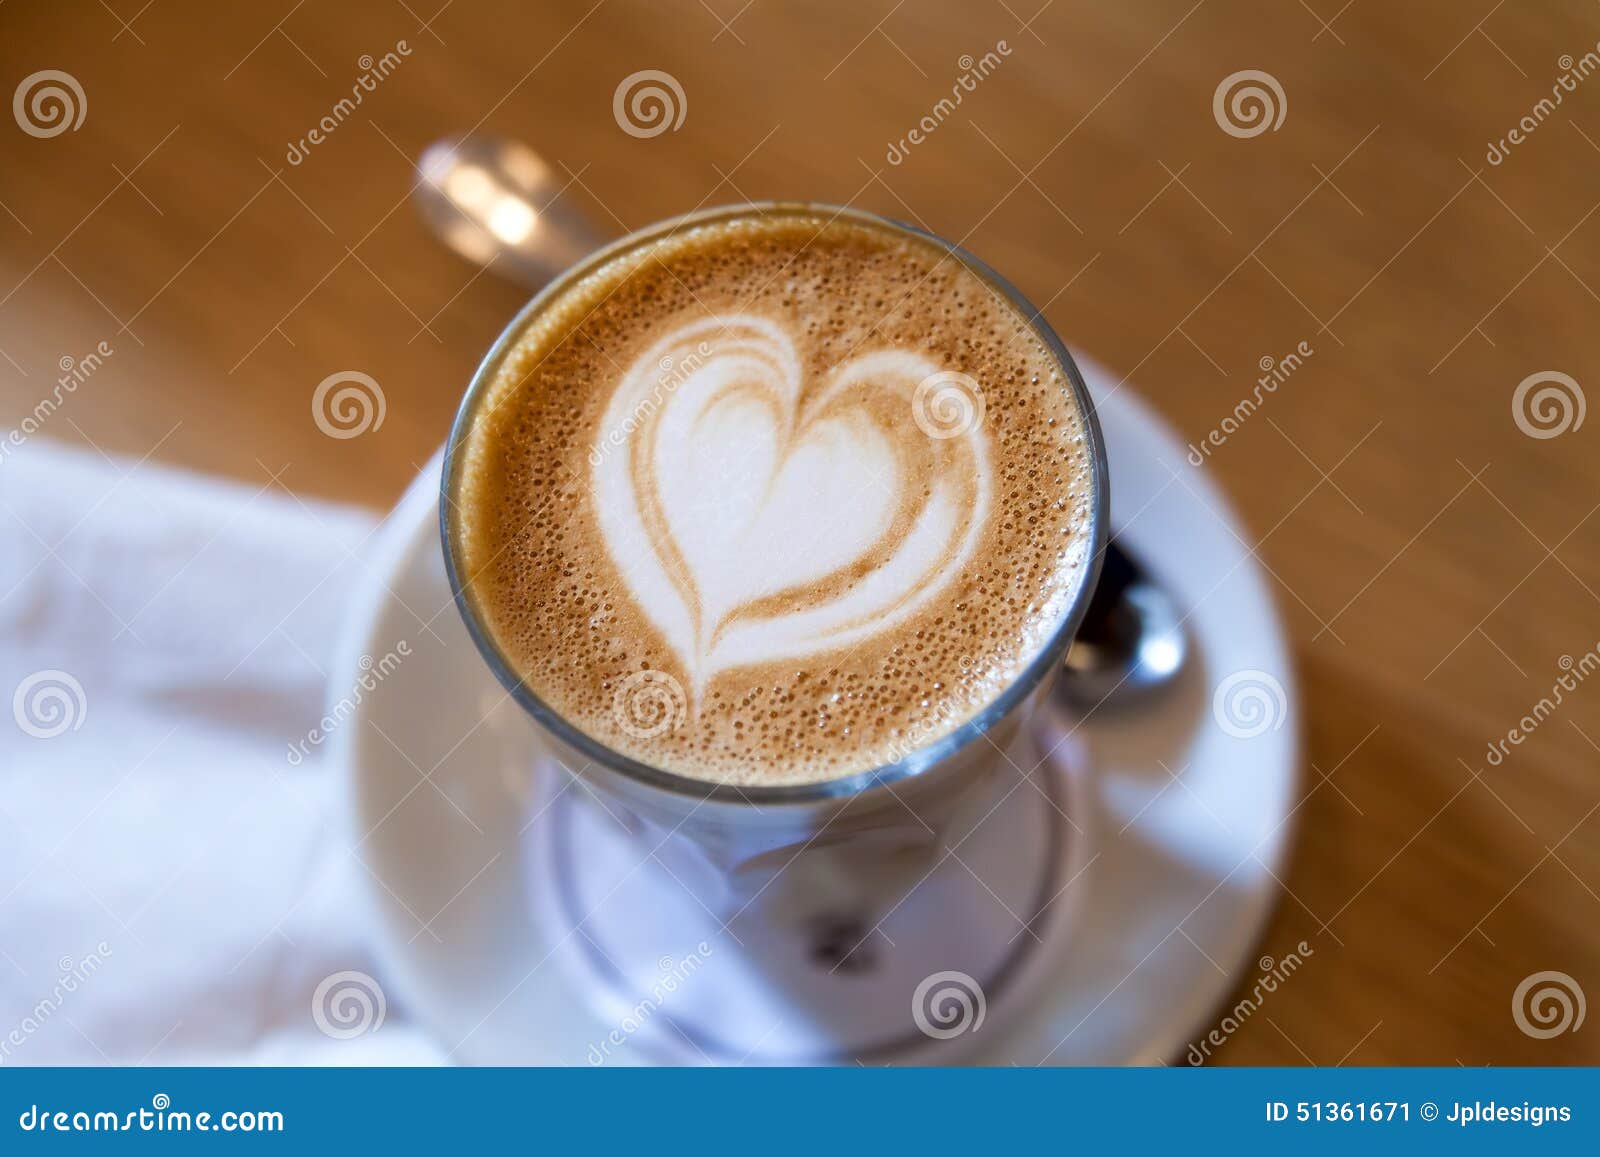 caffe latte with heart  foam pattern